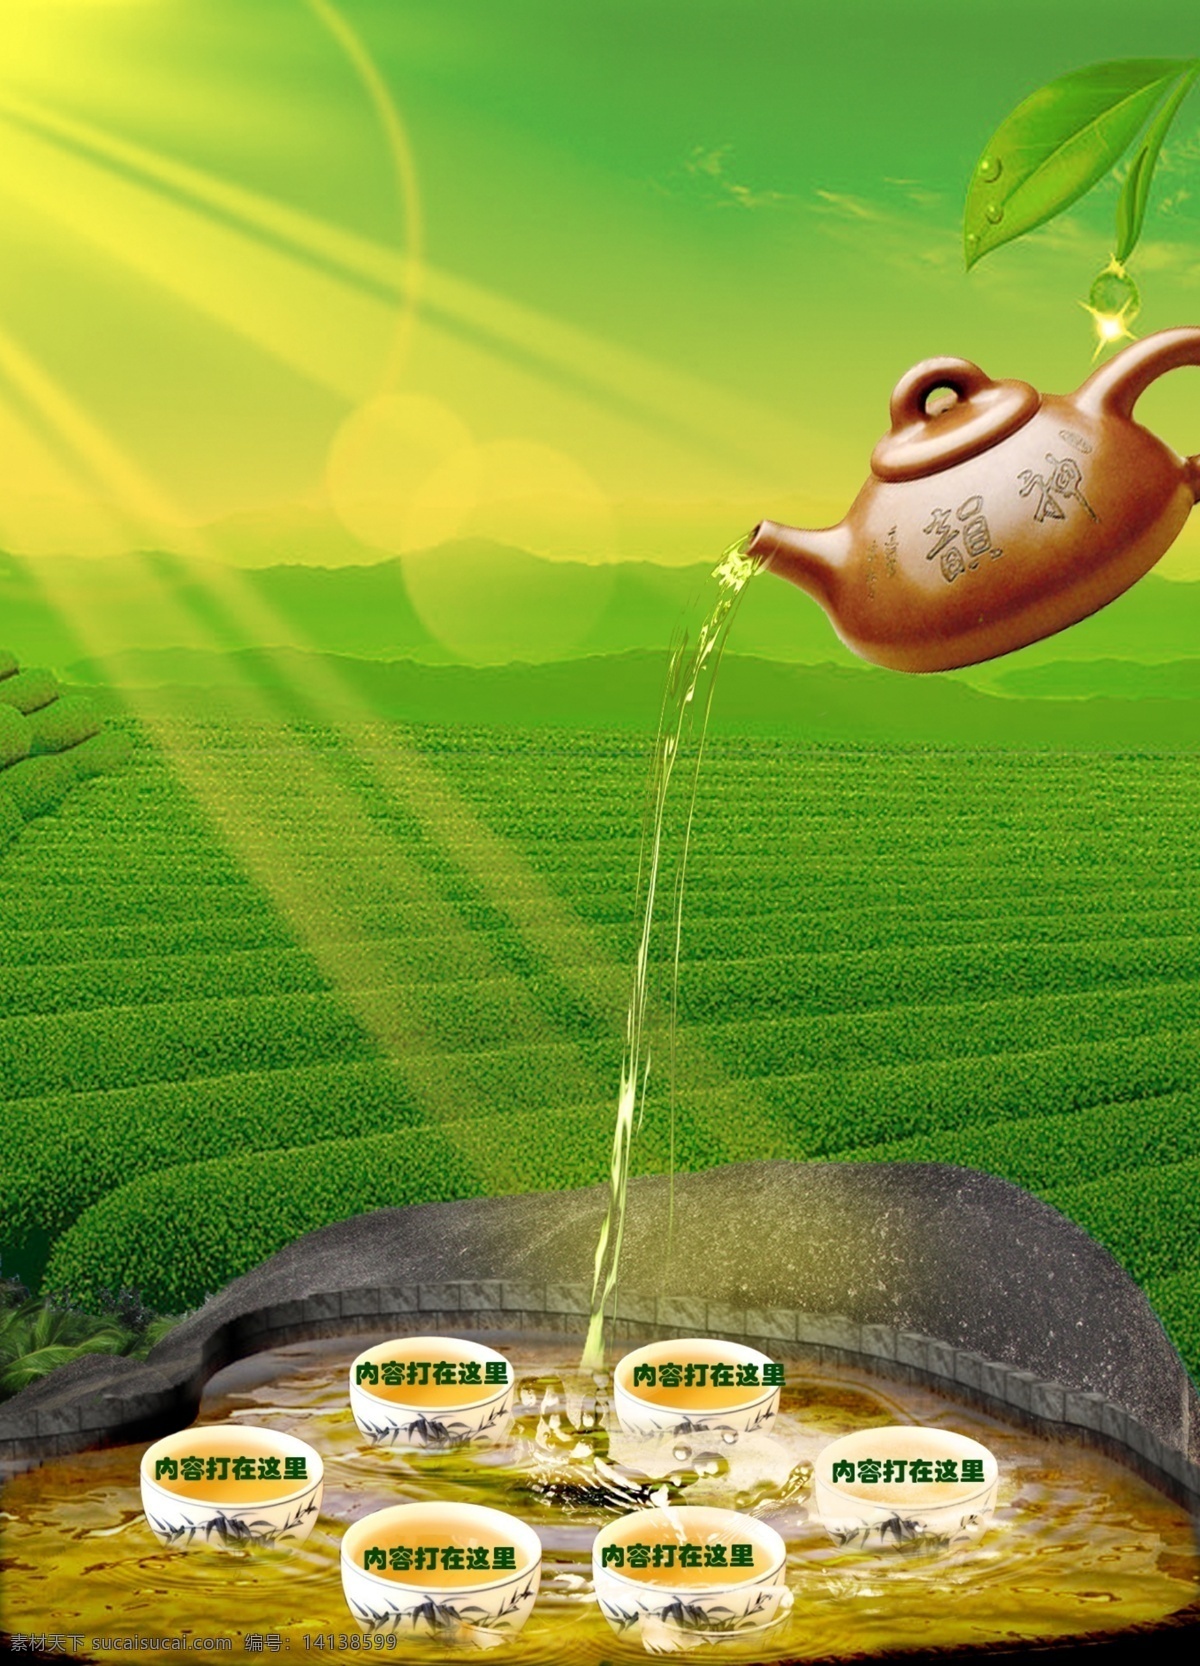 茶 茶杯 茶壶 茶业 茶业海报 茶叶广告 茶园 创意 海报 模板下载 创意茶海报 创意海报 阳光 绿色 清晰 广告设计模板 源文件 其他海报设计